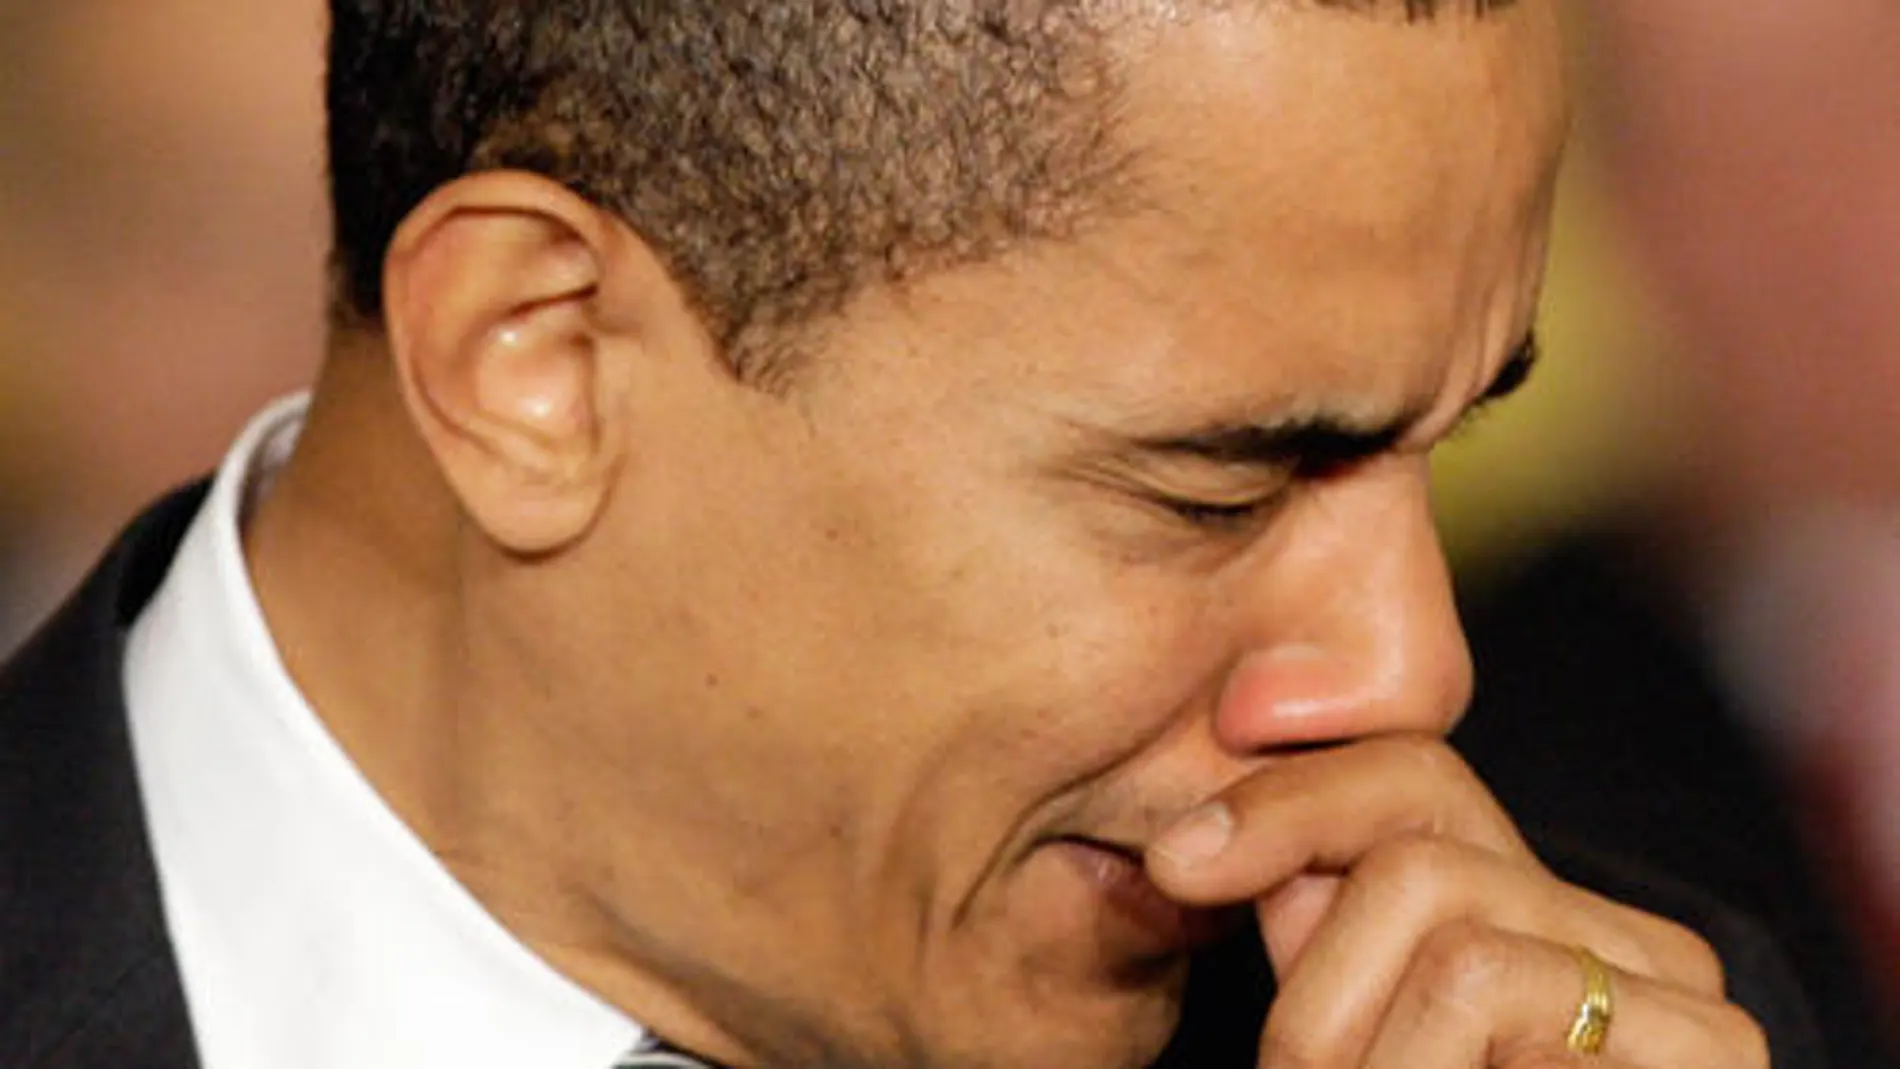 El mismísimo Barack Obama estornudando... ¡Con lo que ello implica!